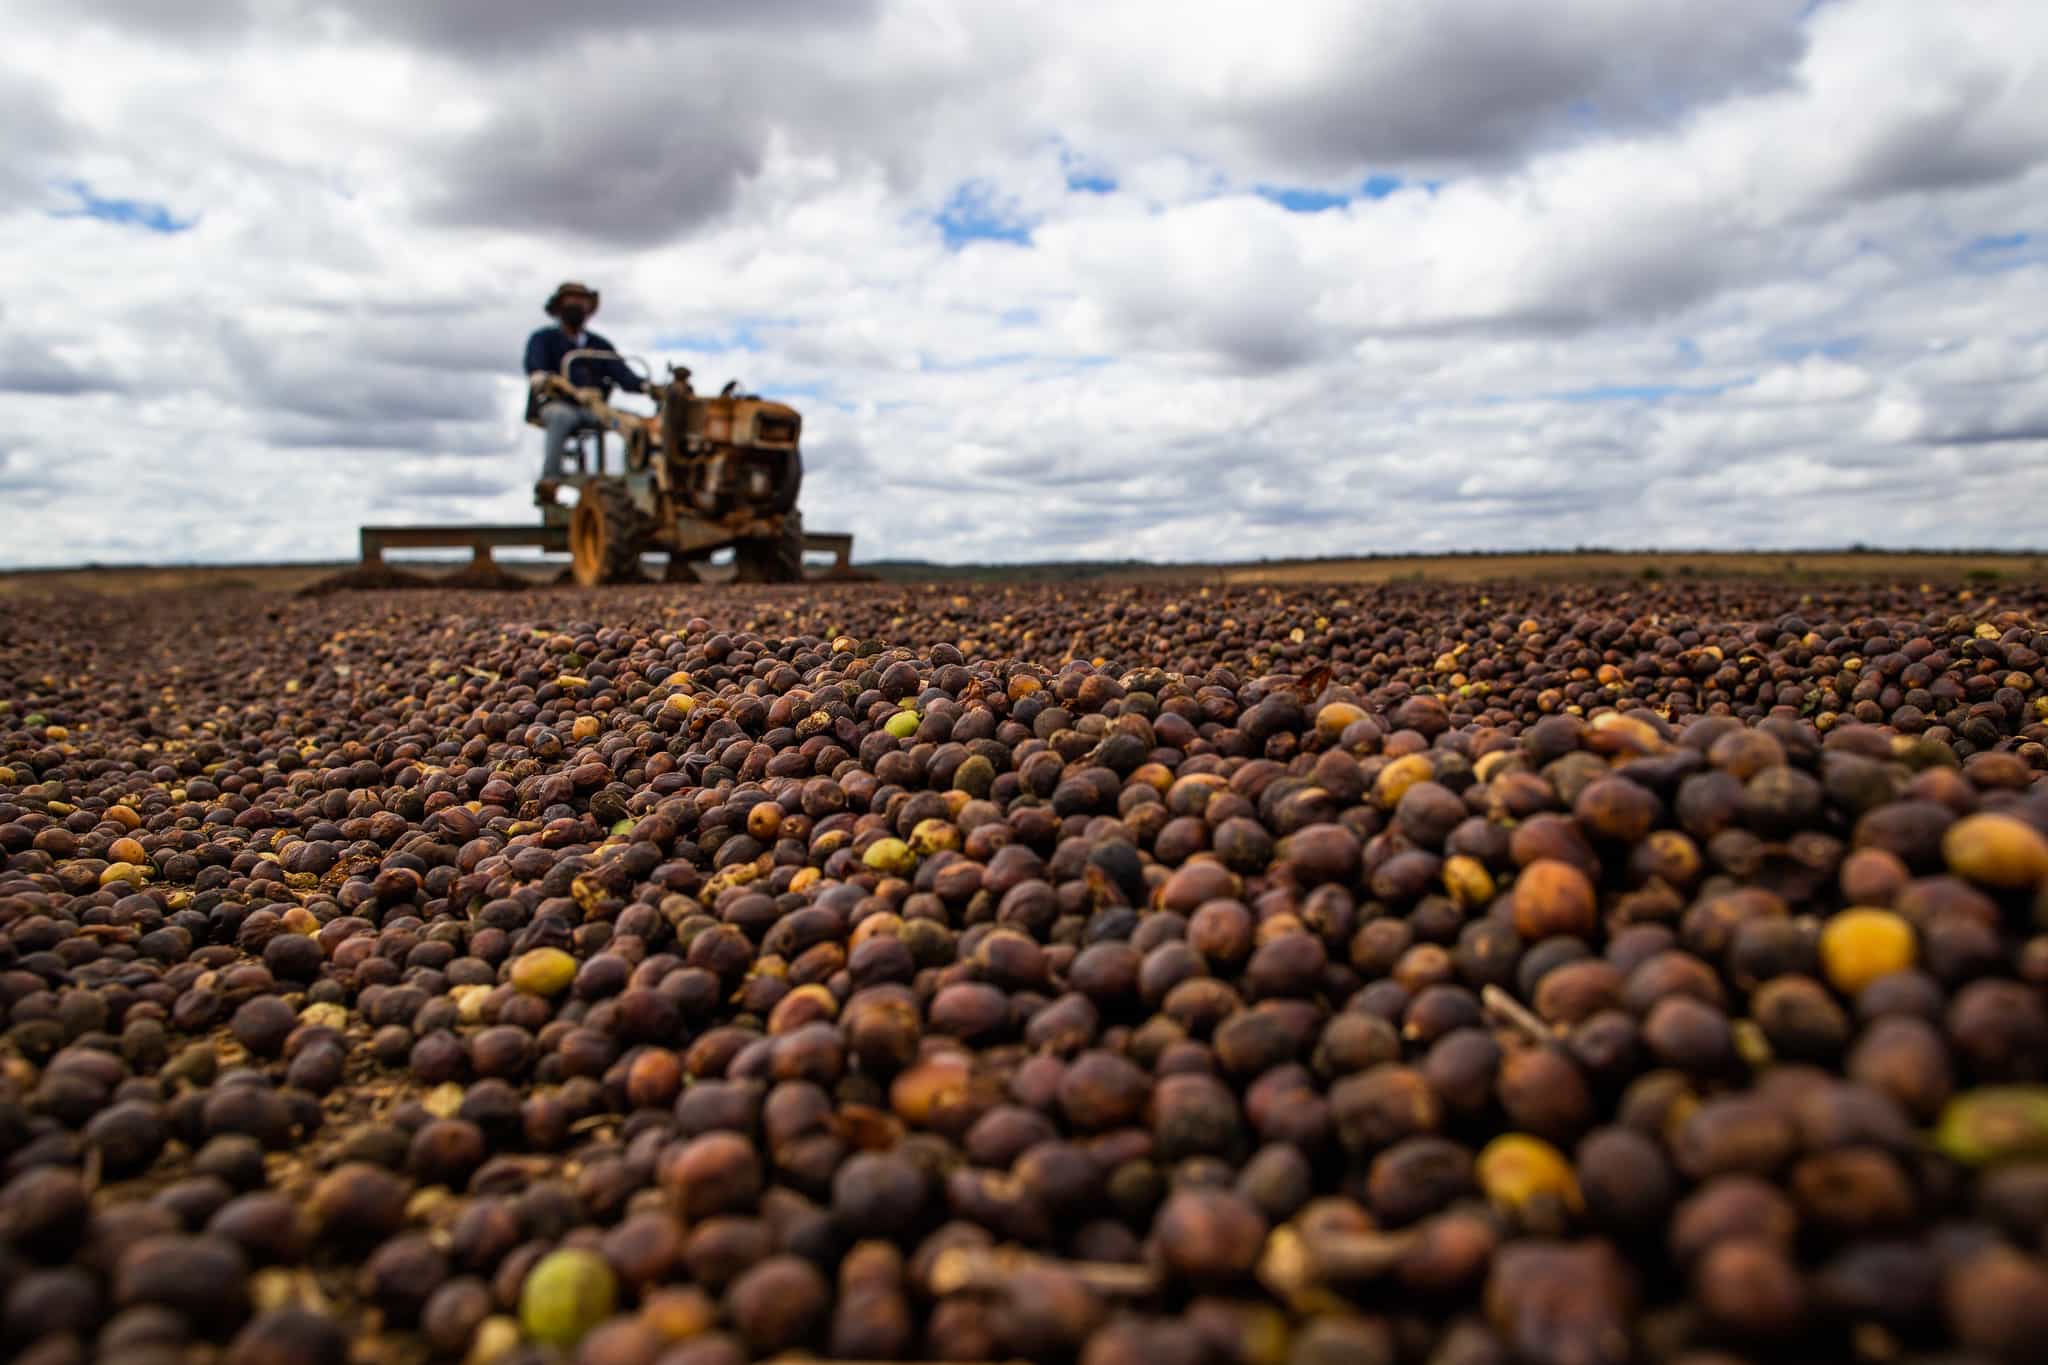  Falta de contêineres atrasa exportações de safra recorde de café do Brasil